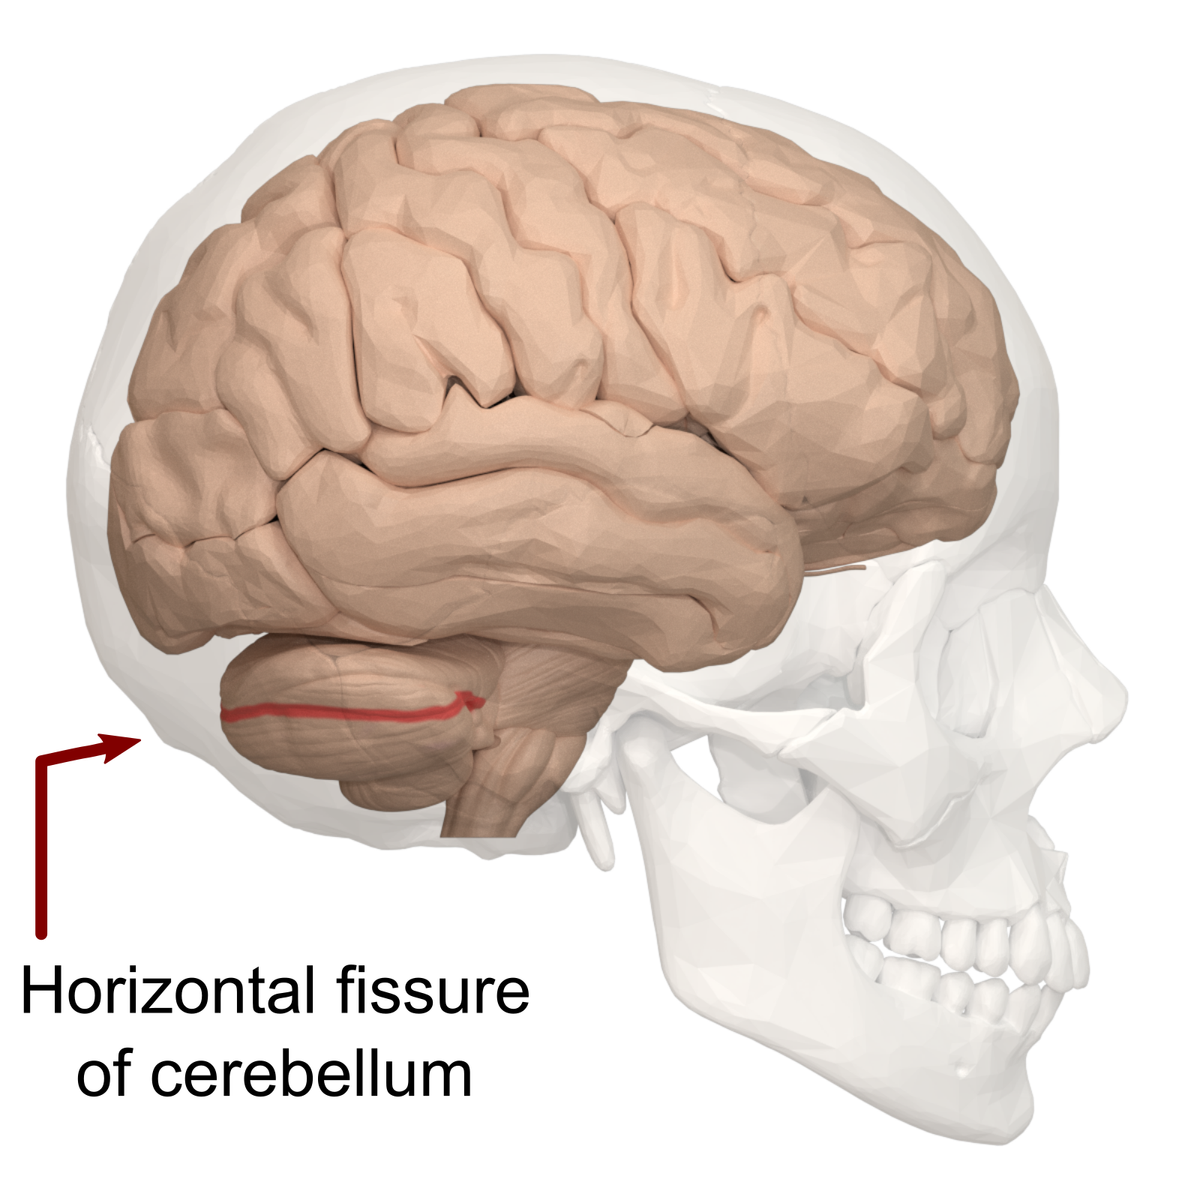 Horizontal fissure of cerebellum - text